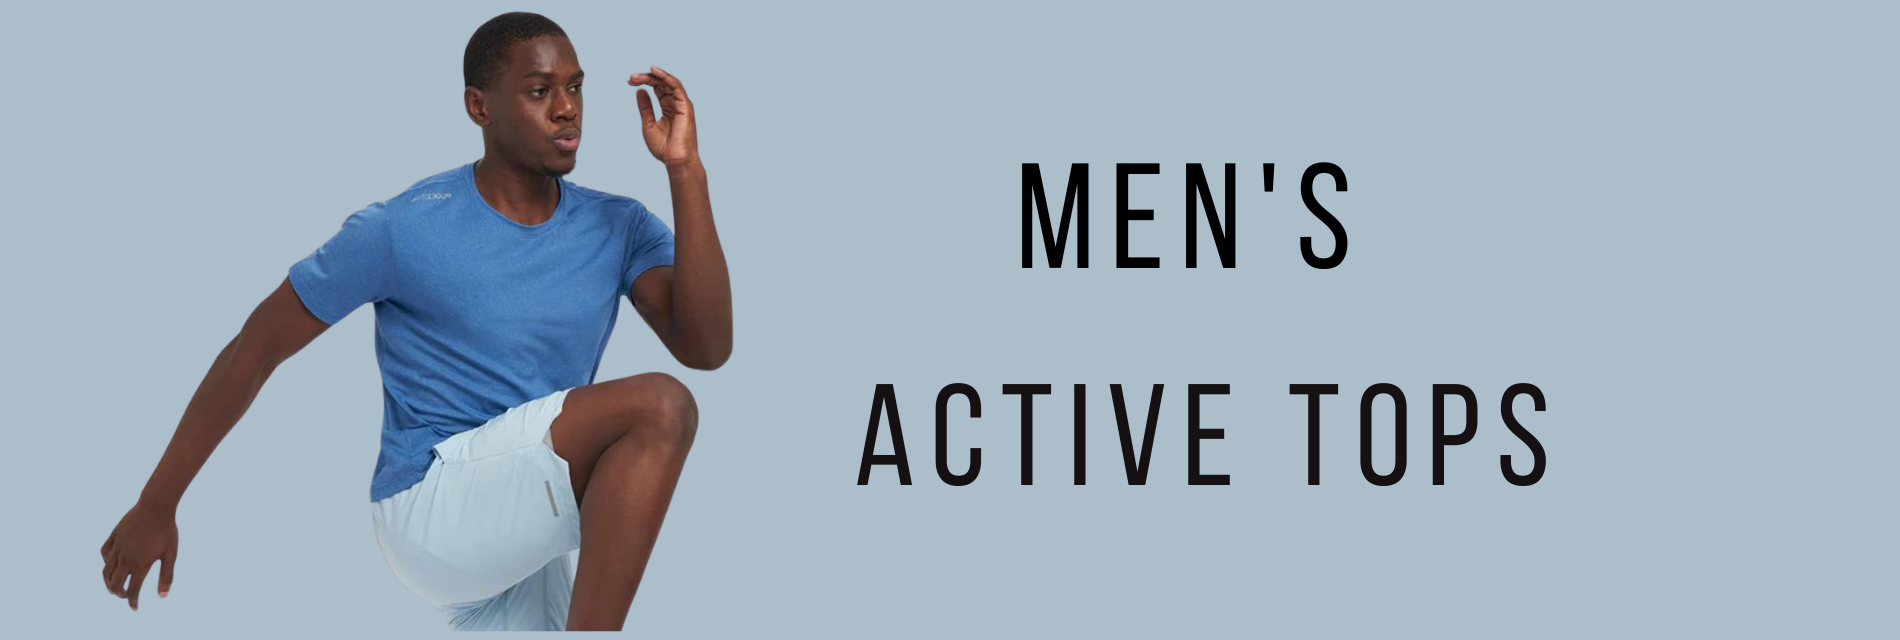 Men's Active Tops